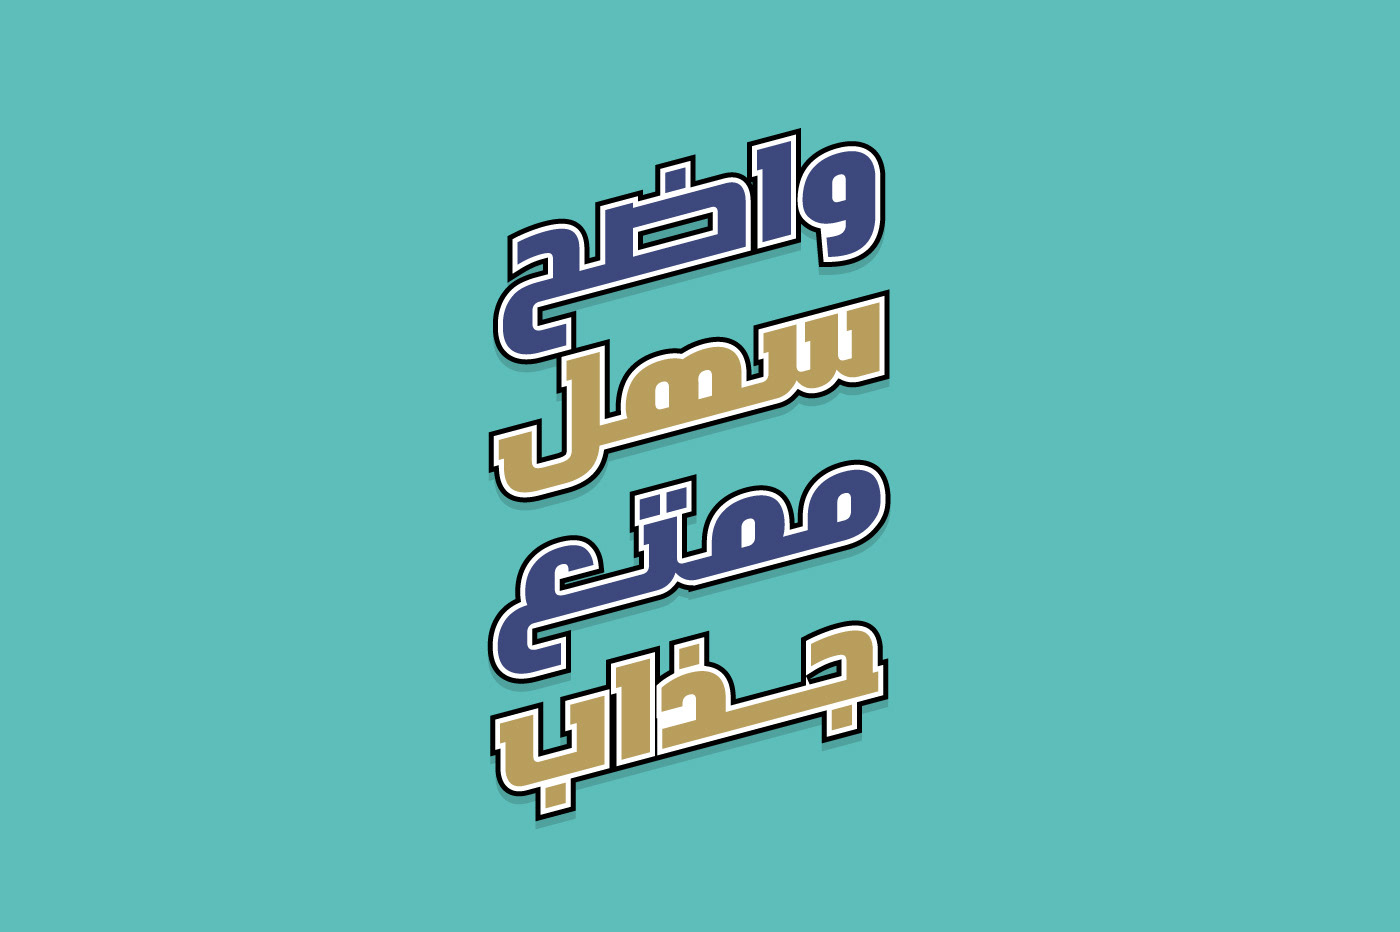 خط عربي مجاني ليبيا عربي خط فنت فن تايب